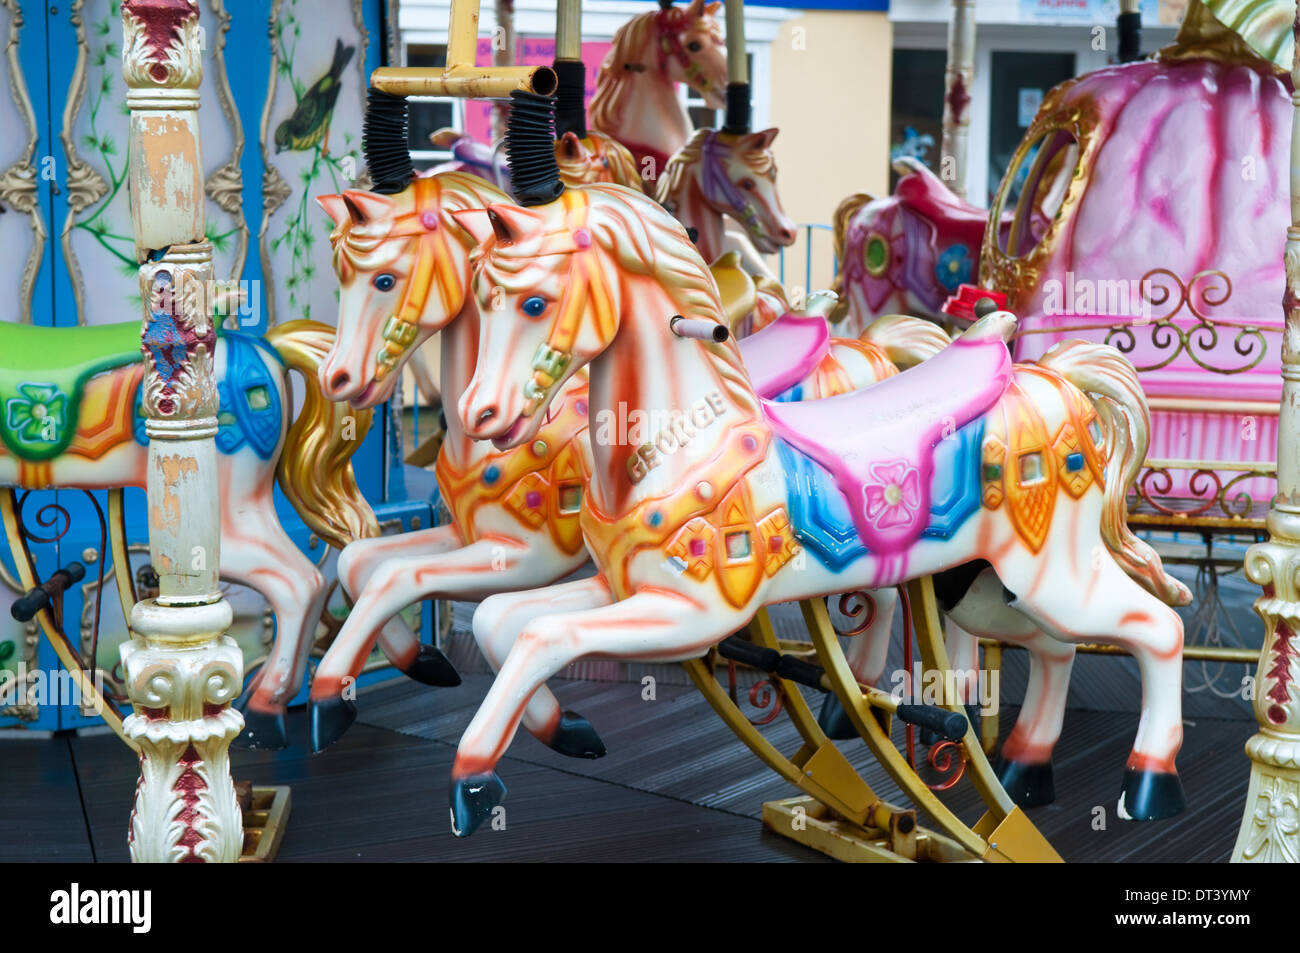 Dipinto luminosamente cavalli in legno su un tradizionale vecchio fiera carosello ride Foto Stock